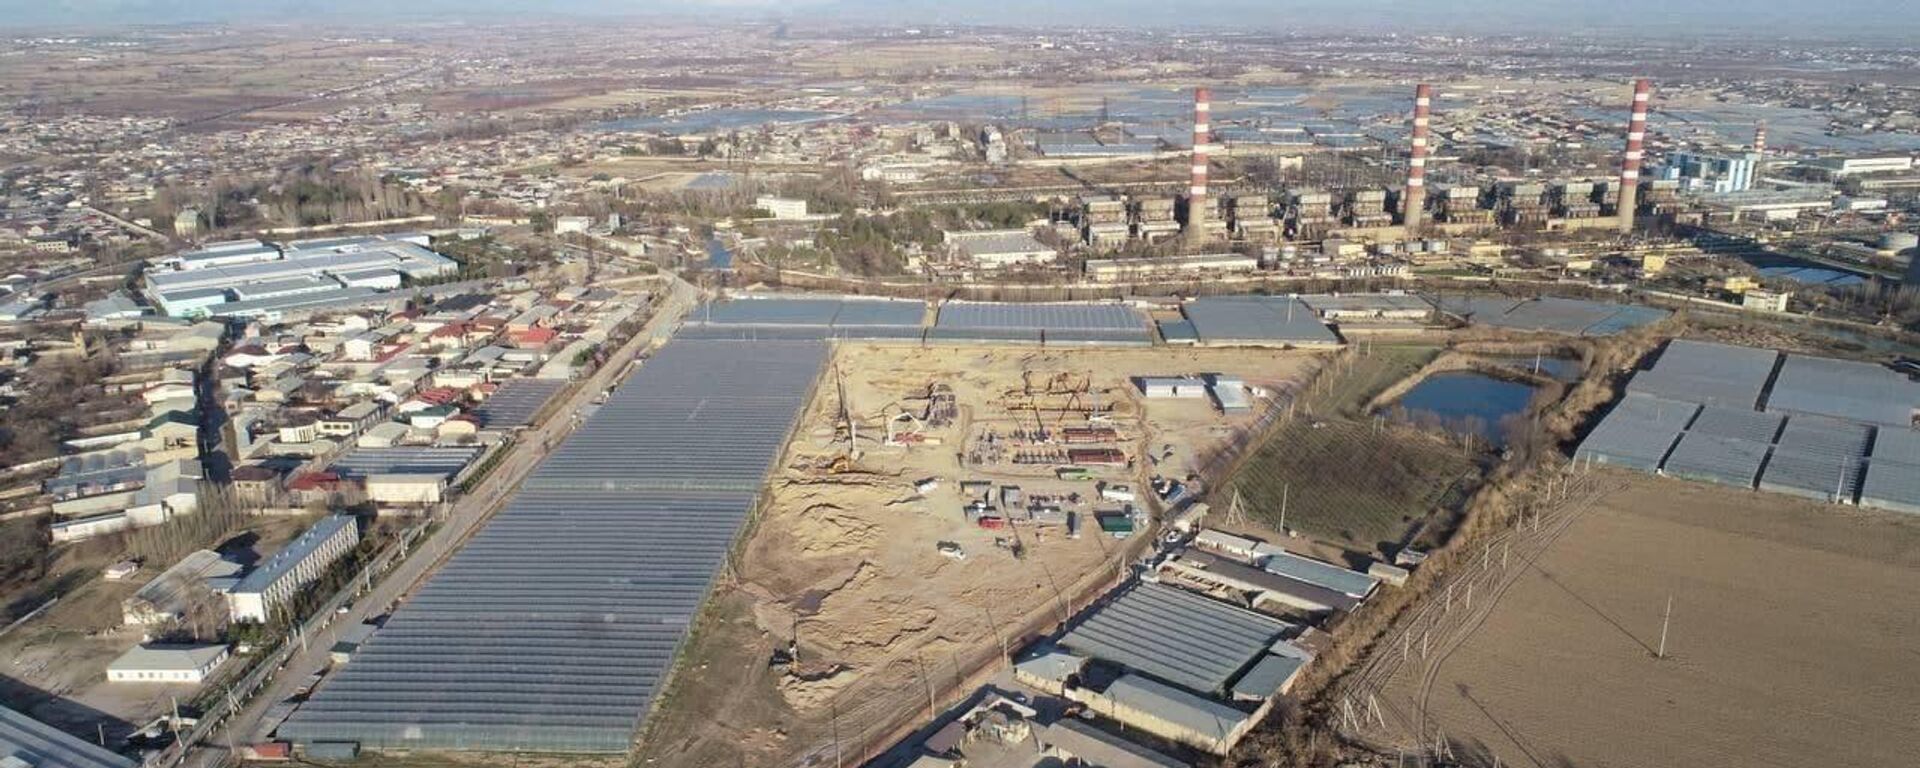 Турецкая компания Aksa Enerji строит в Ташкентской области две ТЭС общей мощностью 470 МВт - Sputnik Узбекистан, 1920, 01.04.2021